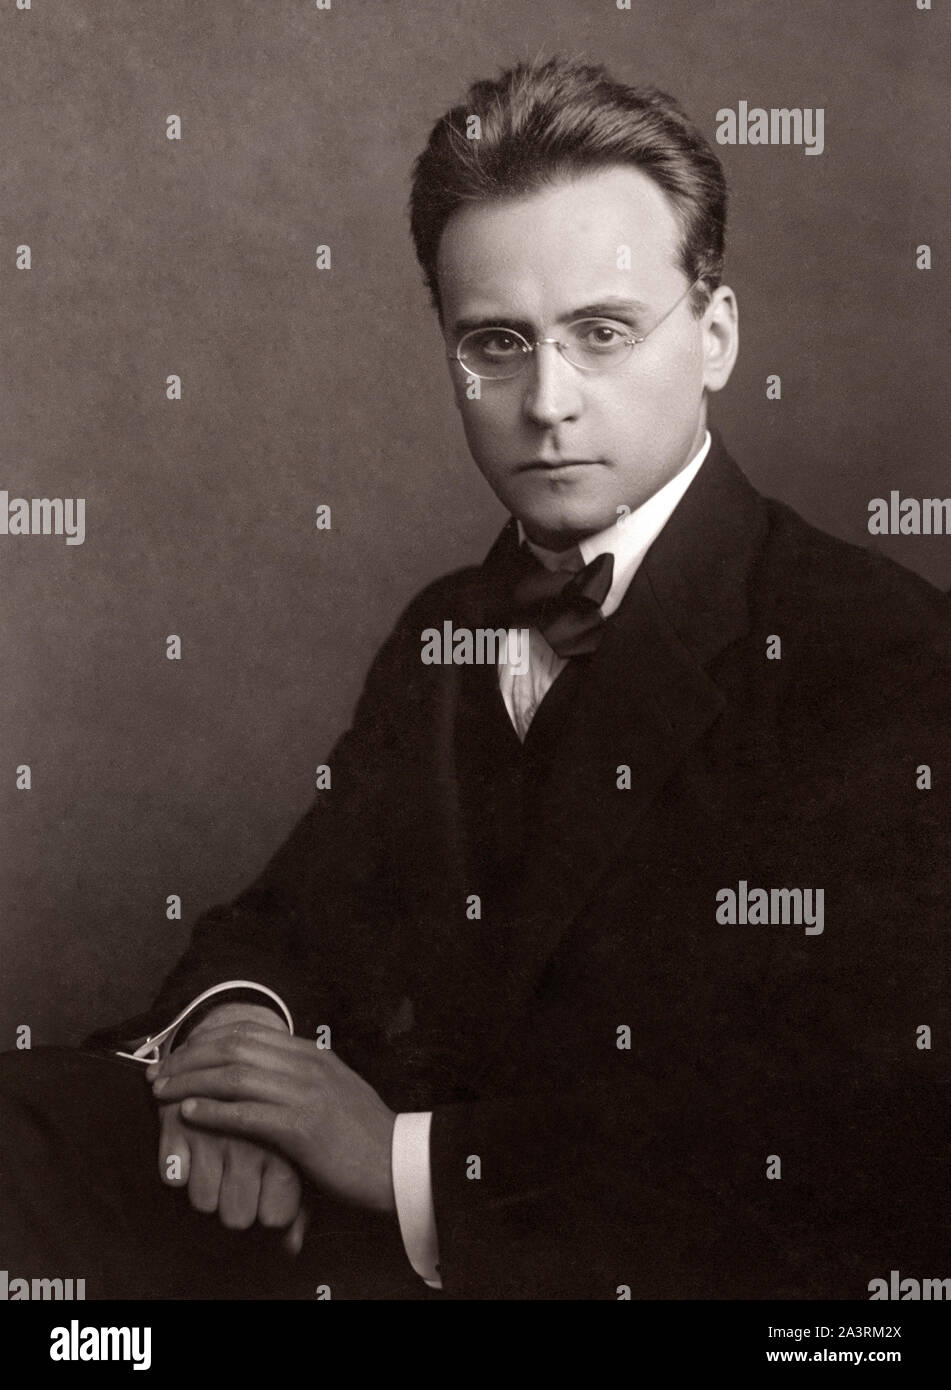 Anton Friedrich Wilhelm von Webern (1883 – 1945) was an Austrian composer and conductor. Stock Photo